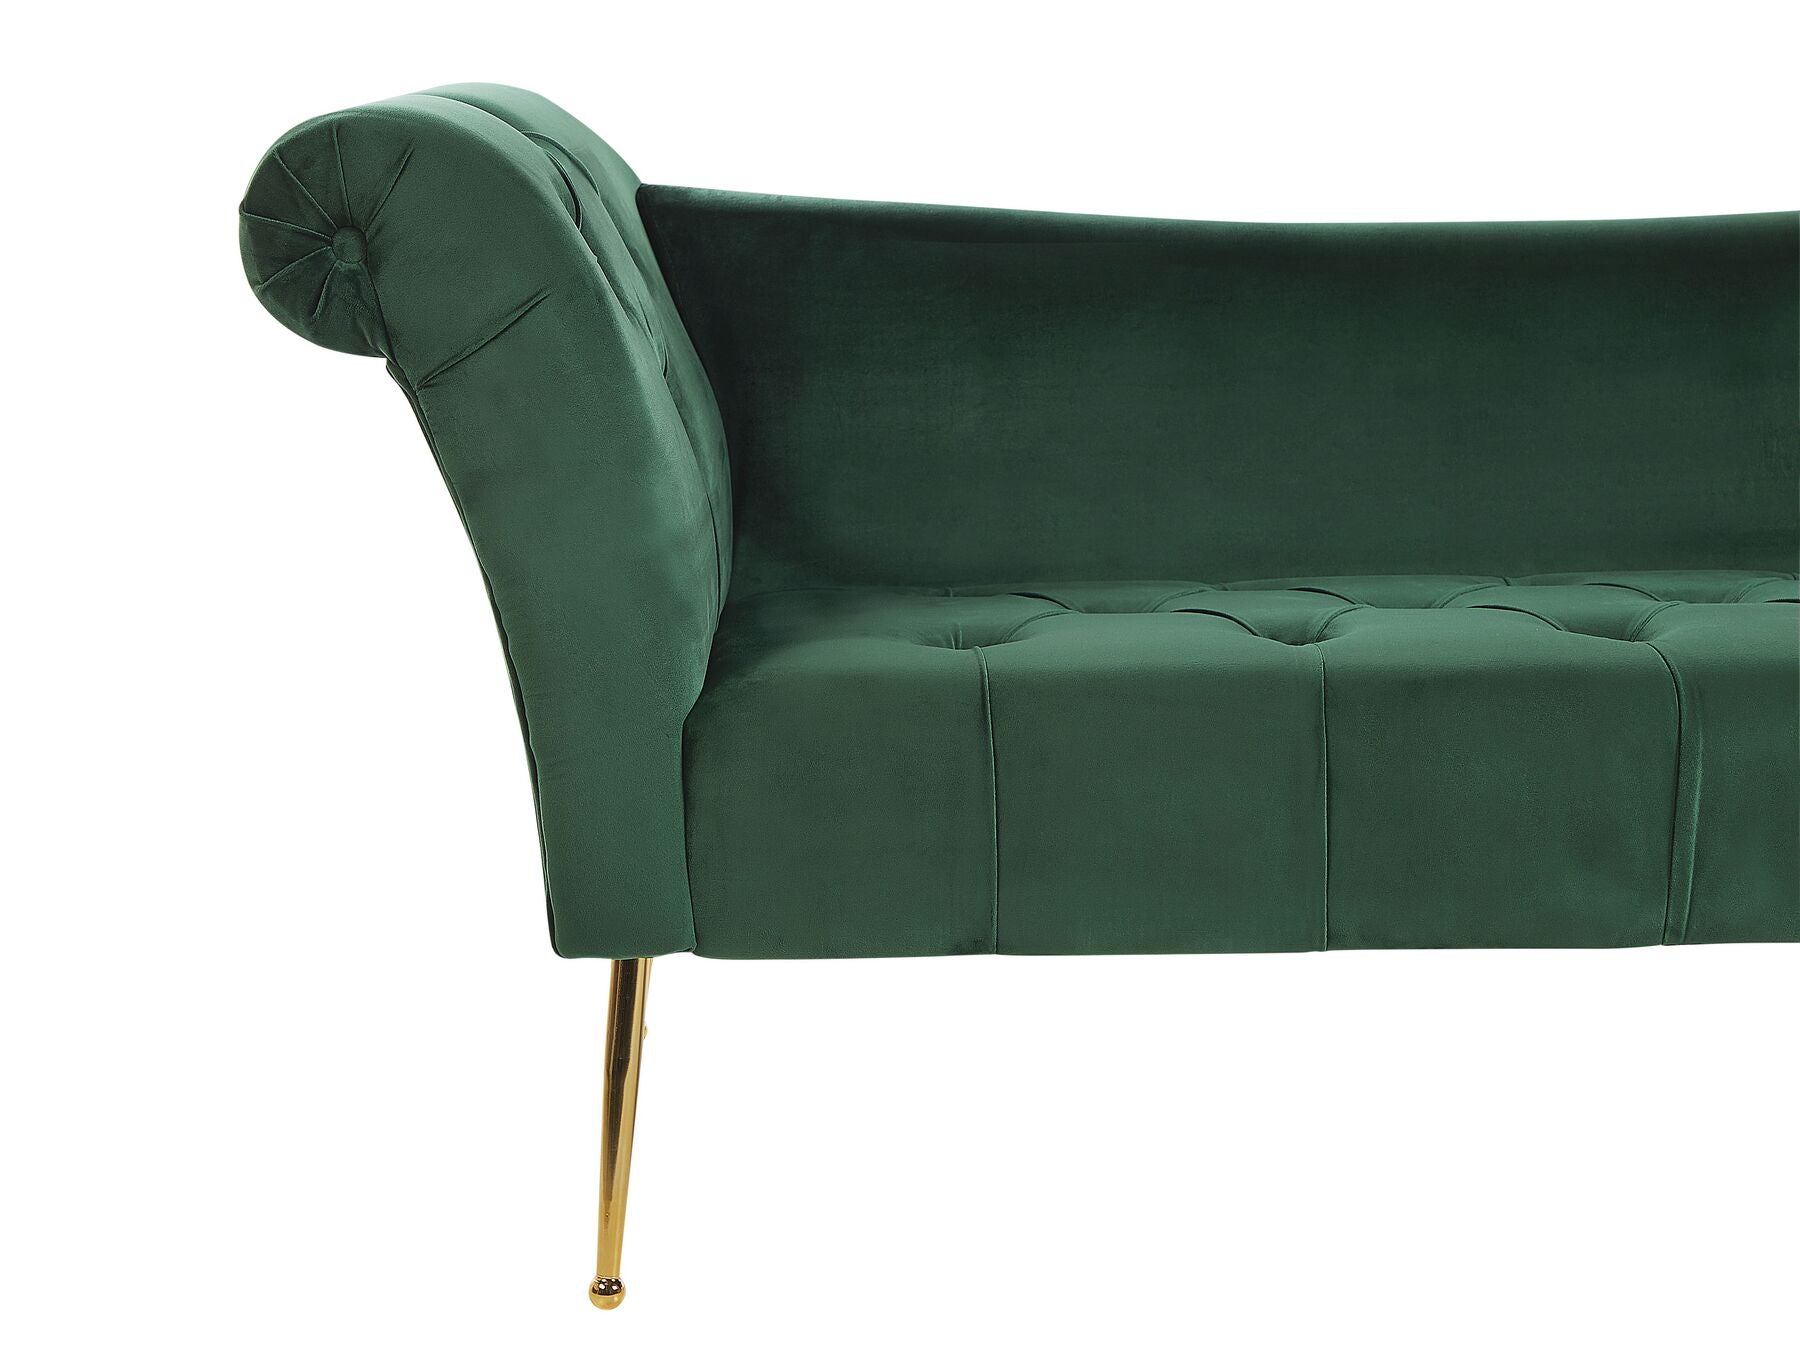 Nantilly Velvet Chaise Lounge Green